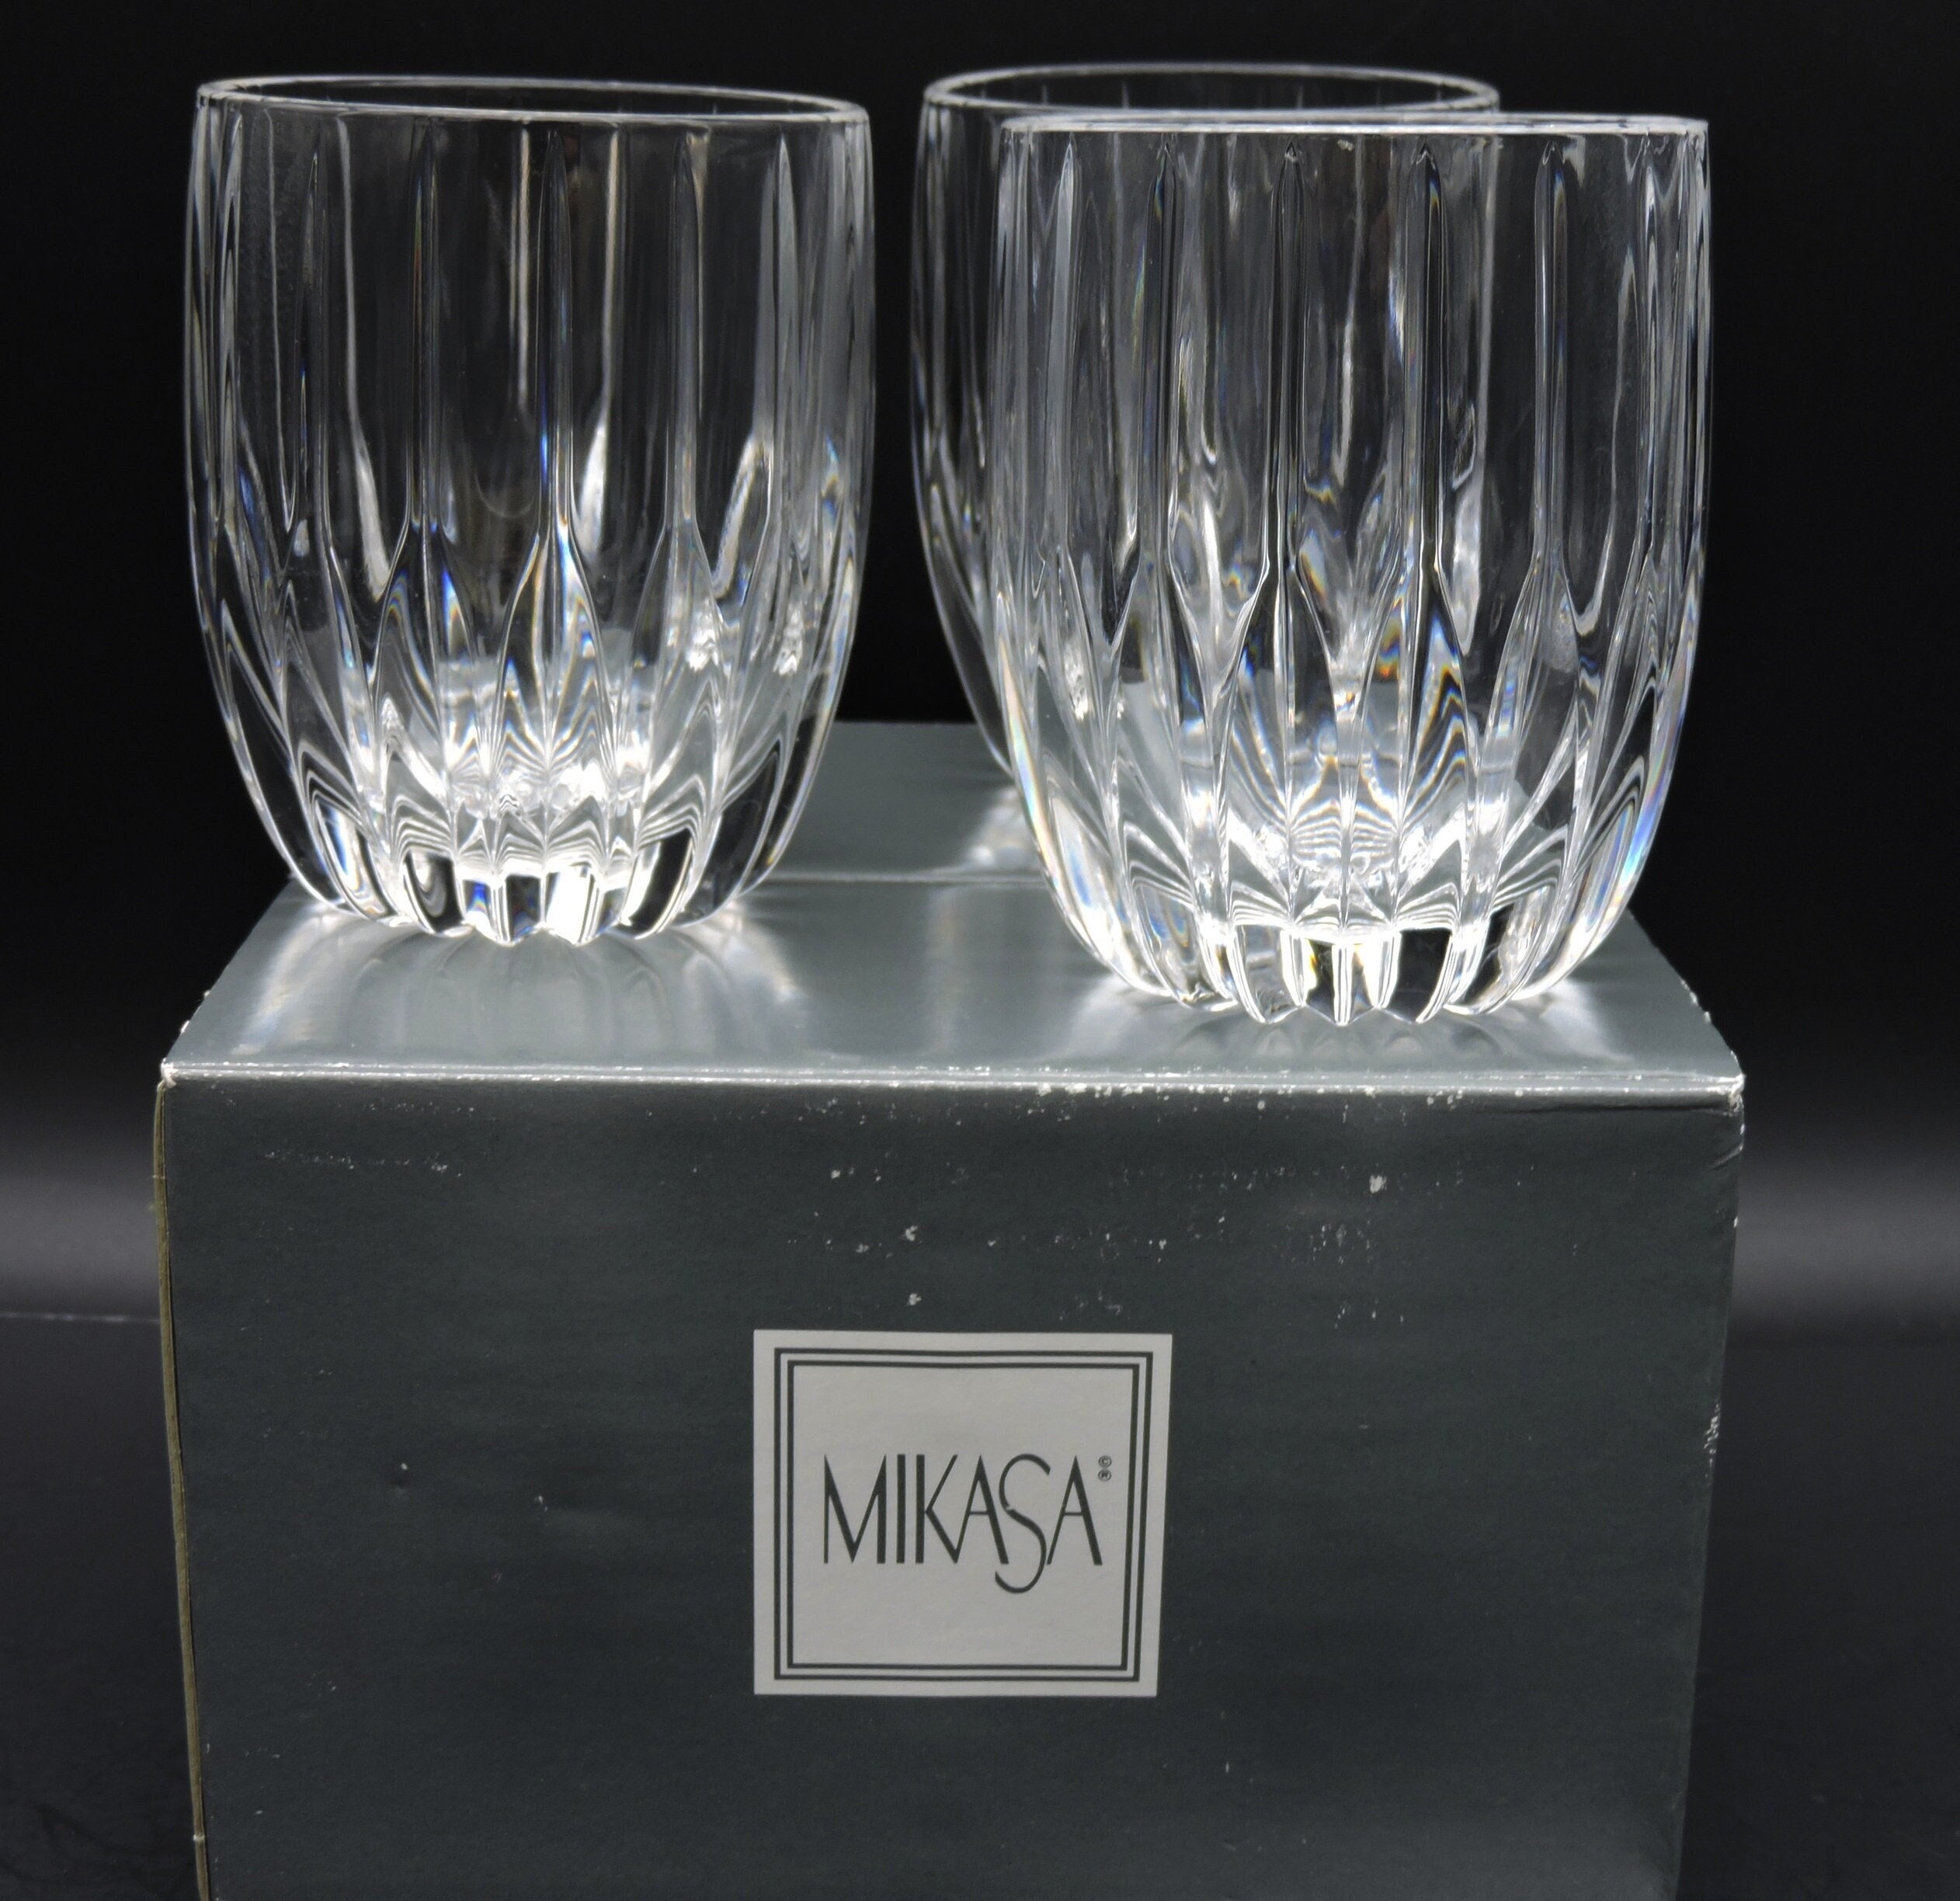 Mikasa Park Lane Water Glasses / Water Glasses / Crystal Glasses / Elegant  Glasses / Mikasa Blown Glass / Elegant Stemware / Drinkware Pair 